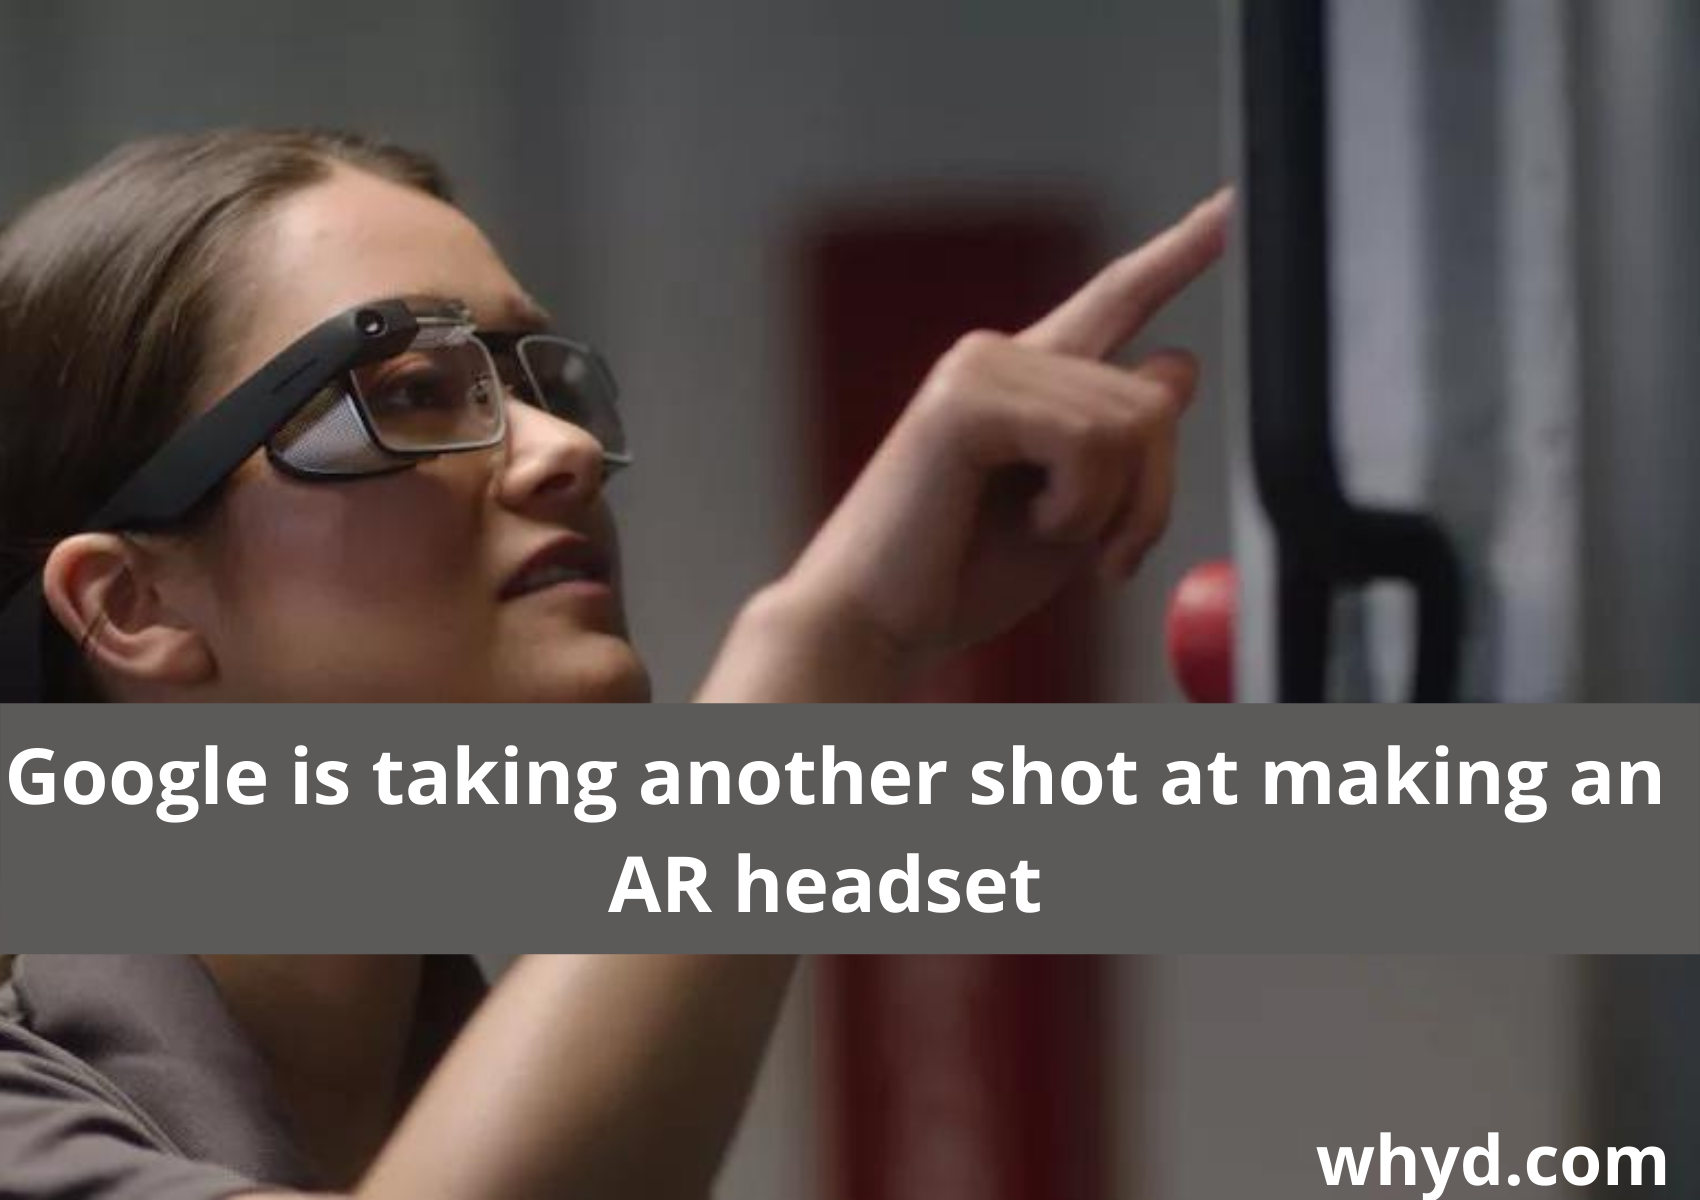 AR headset